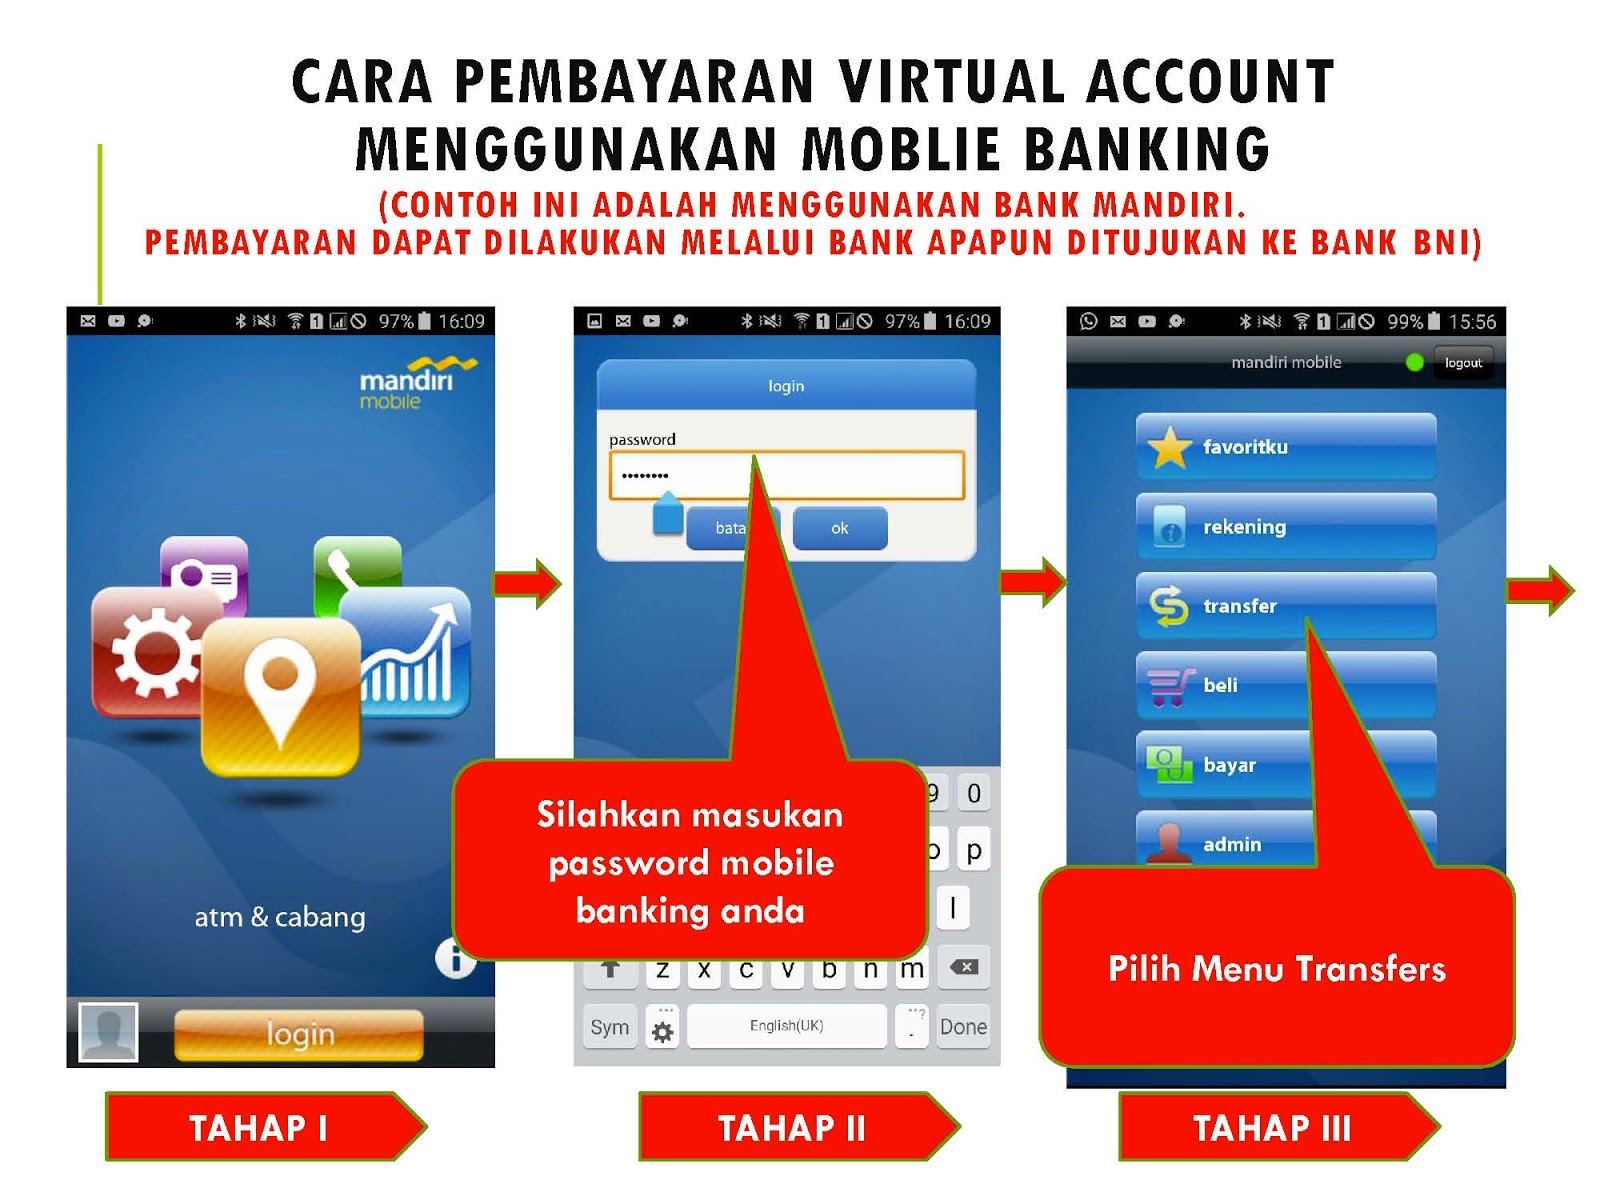 Lakukan pembayaran virtual account Pembayaran dapat dilakukan melalui bank apapun ditujukan ke Bank BNI